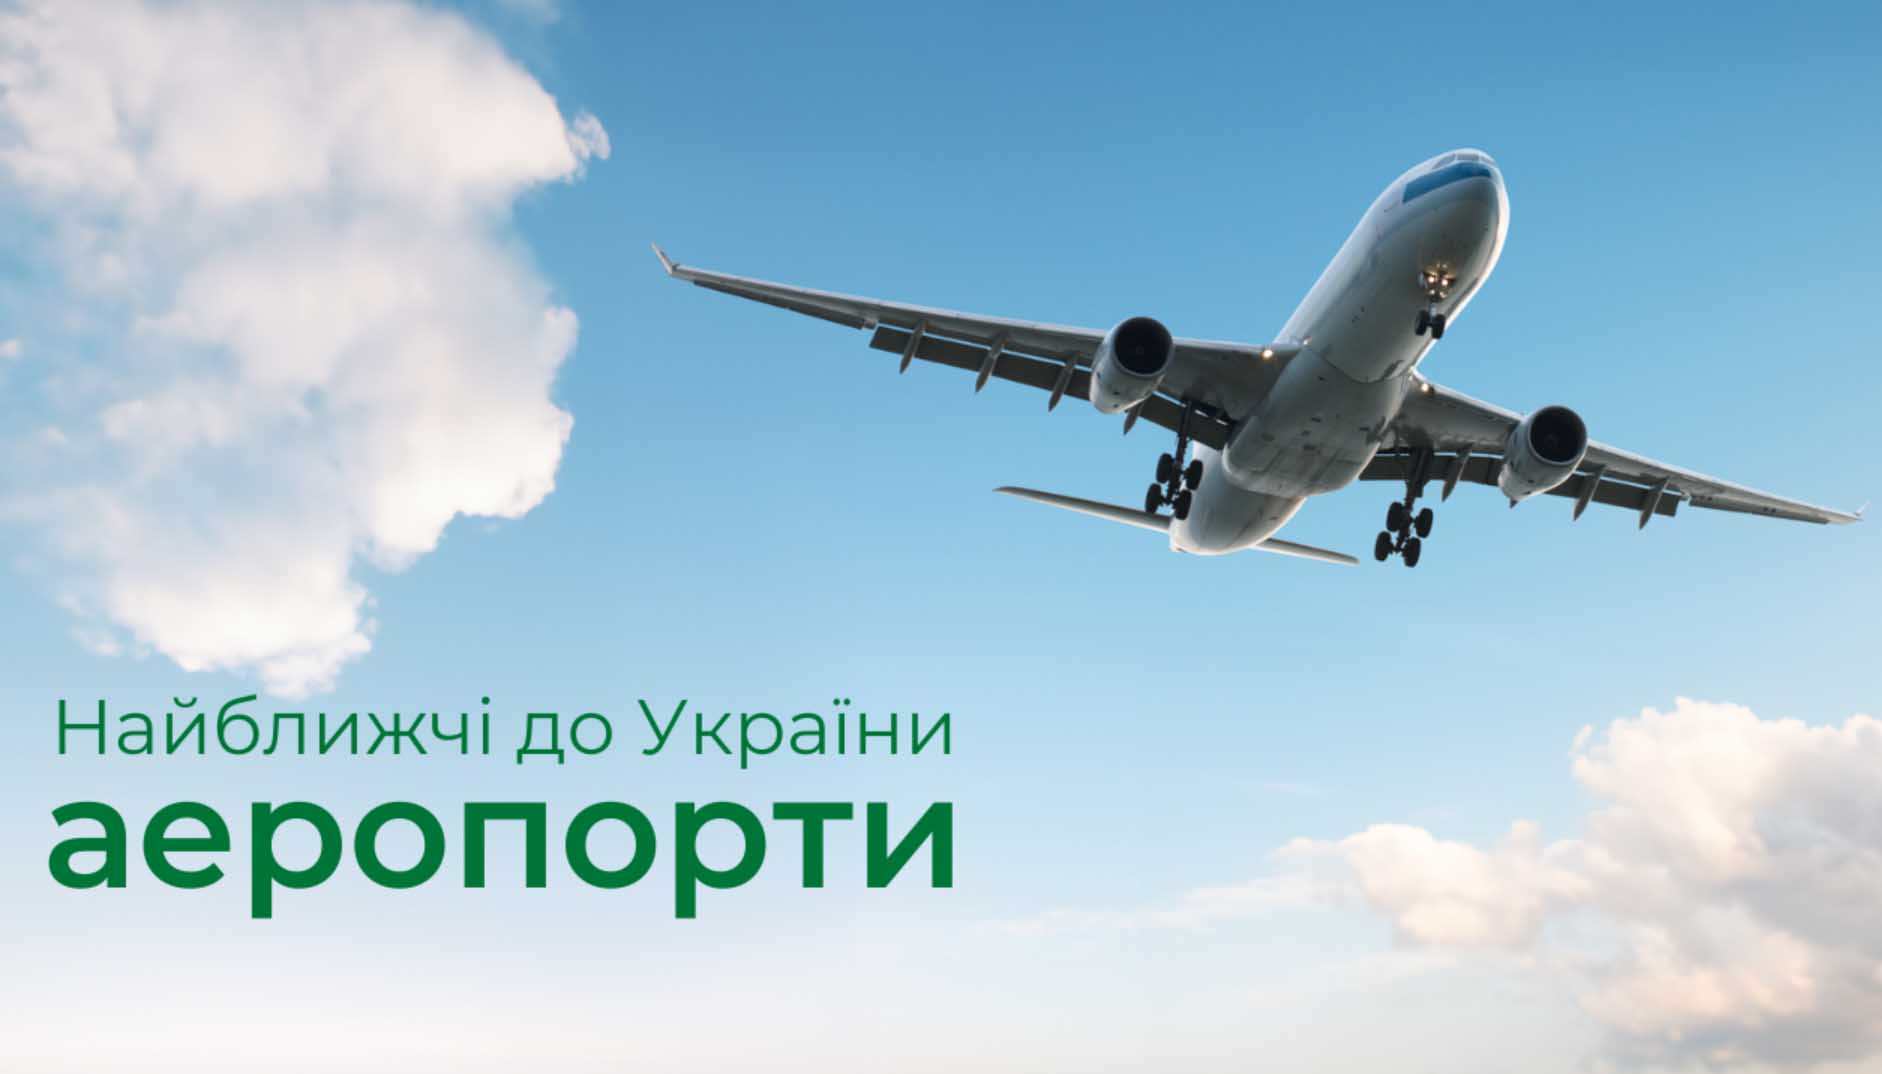 Аеропорти на кордоні з Україною: як вибрати оптимальний маршрут